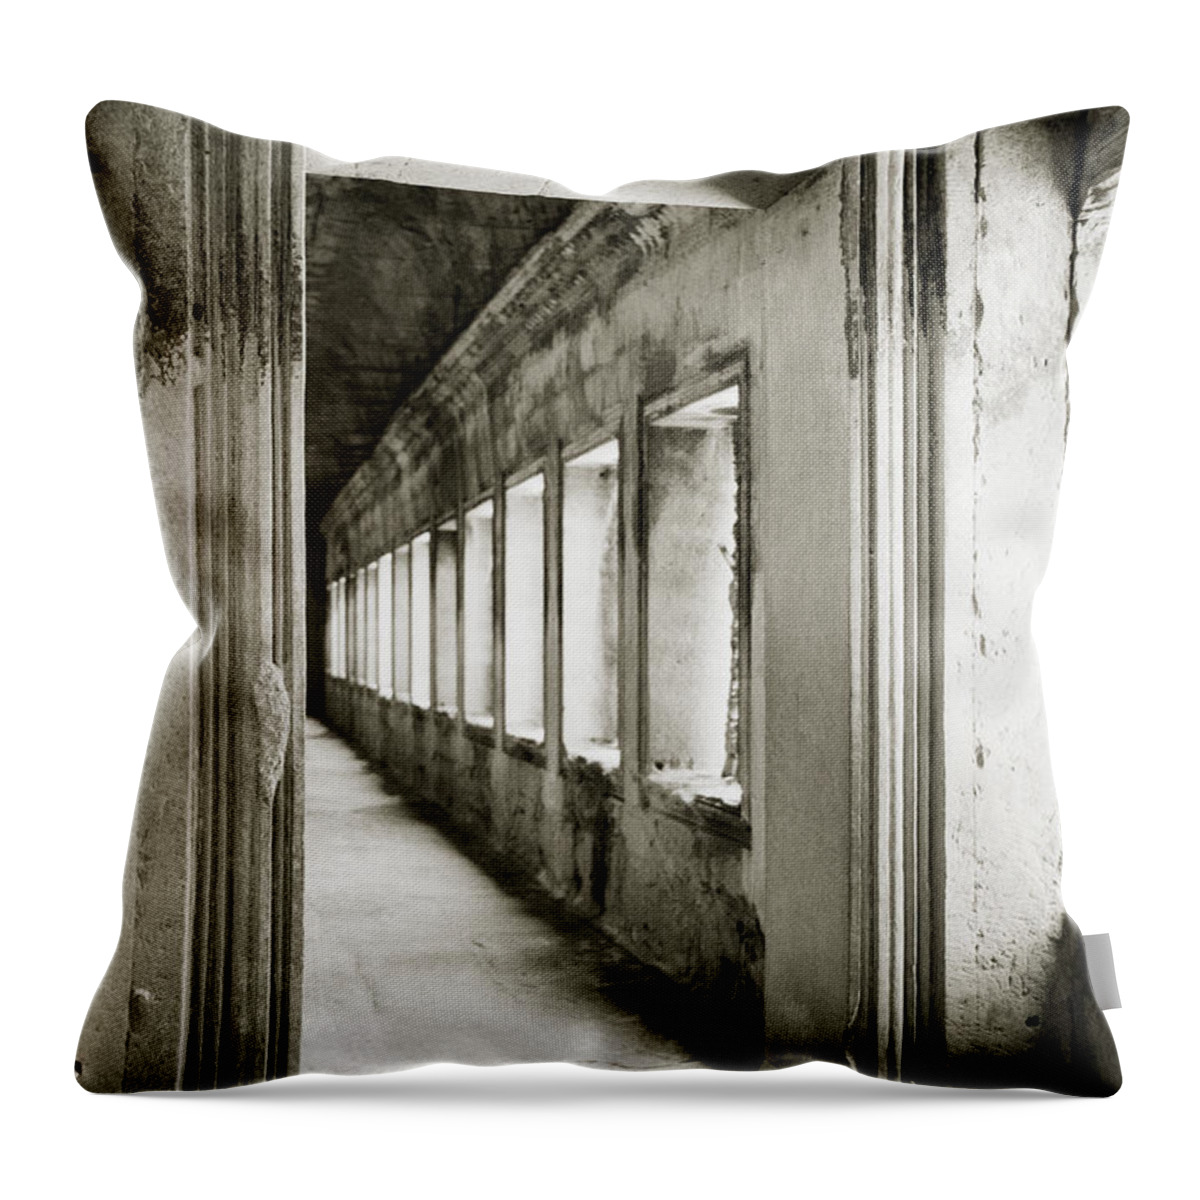 Angkor Wat Throw Pillow featuring the photograph Angkor Wat Stillness by Shaun Higson